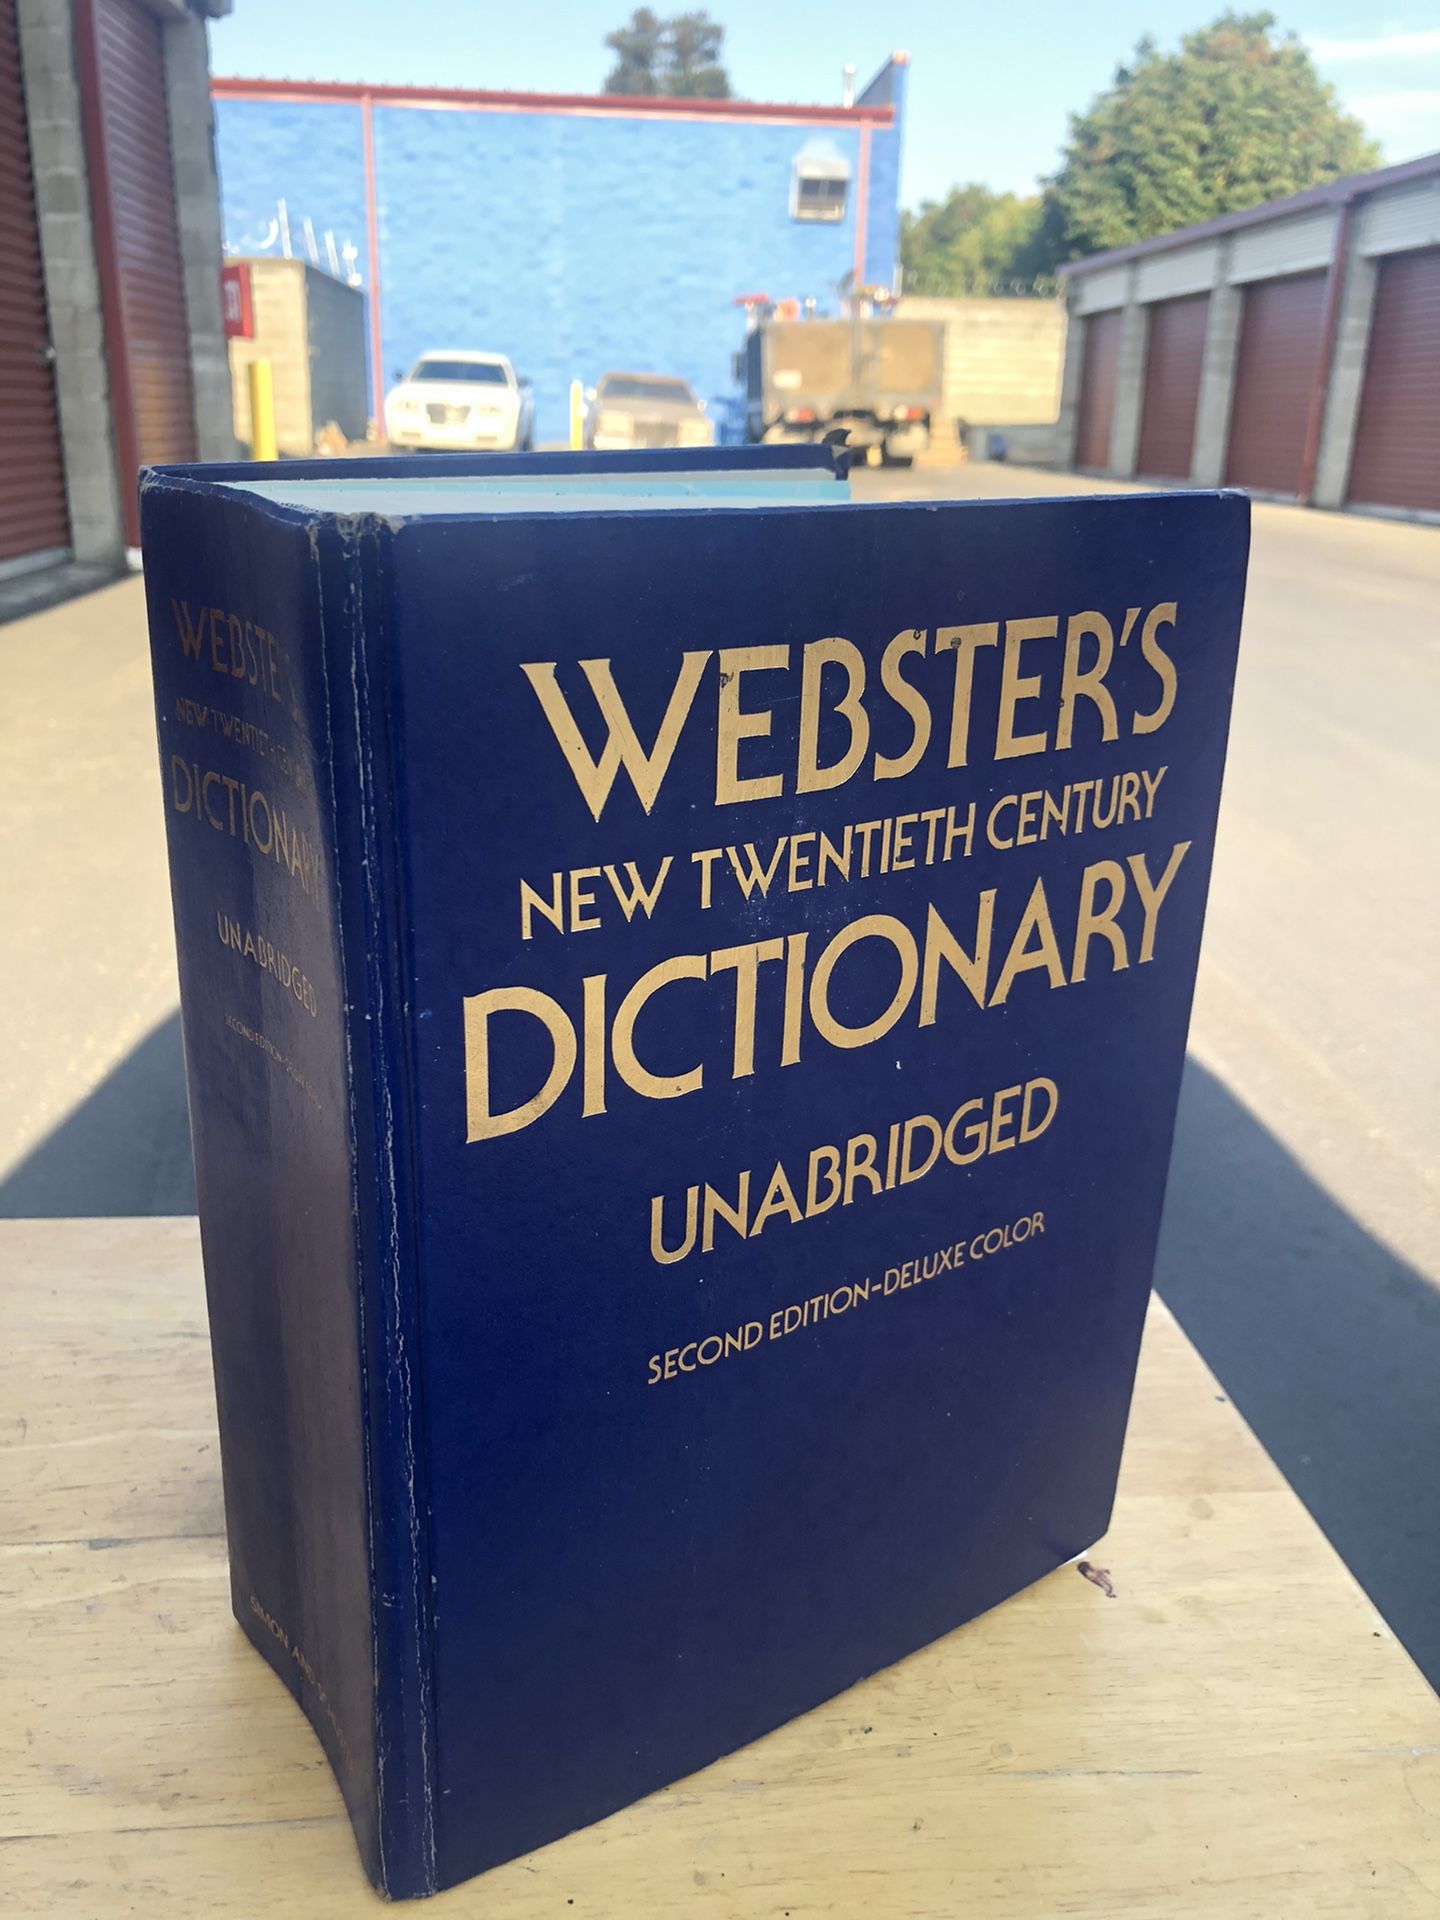 Websters New Twentieth Century Dictionary Unabridged Second Edition Deluxe Color